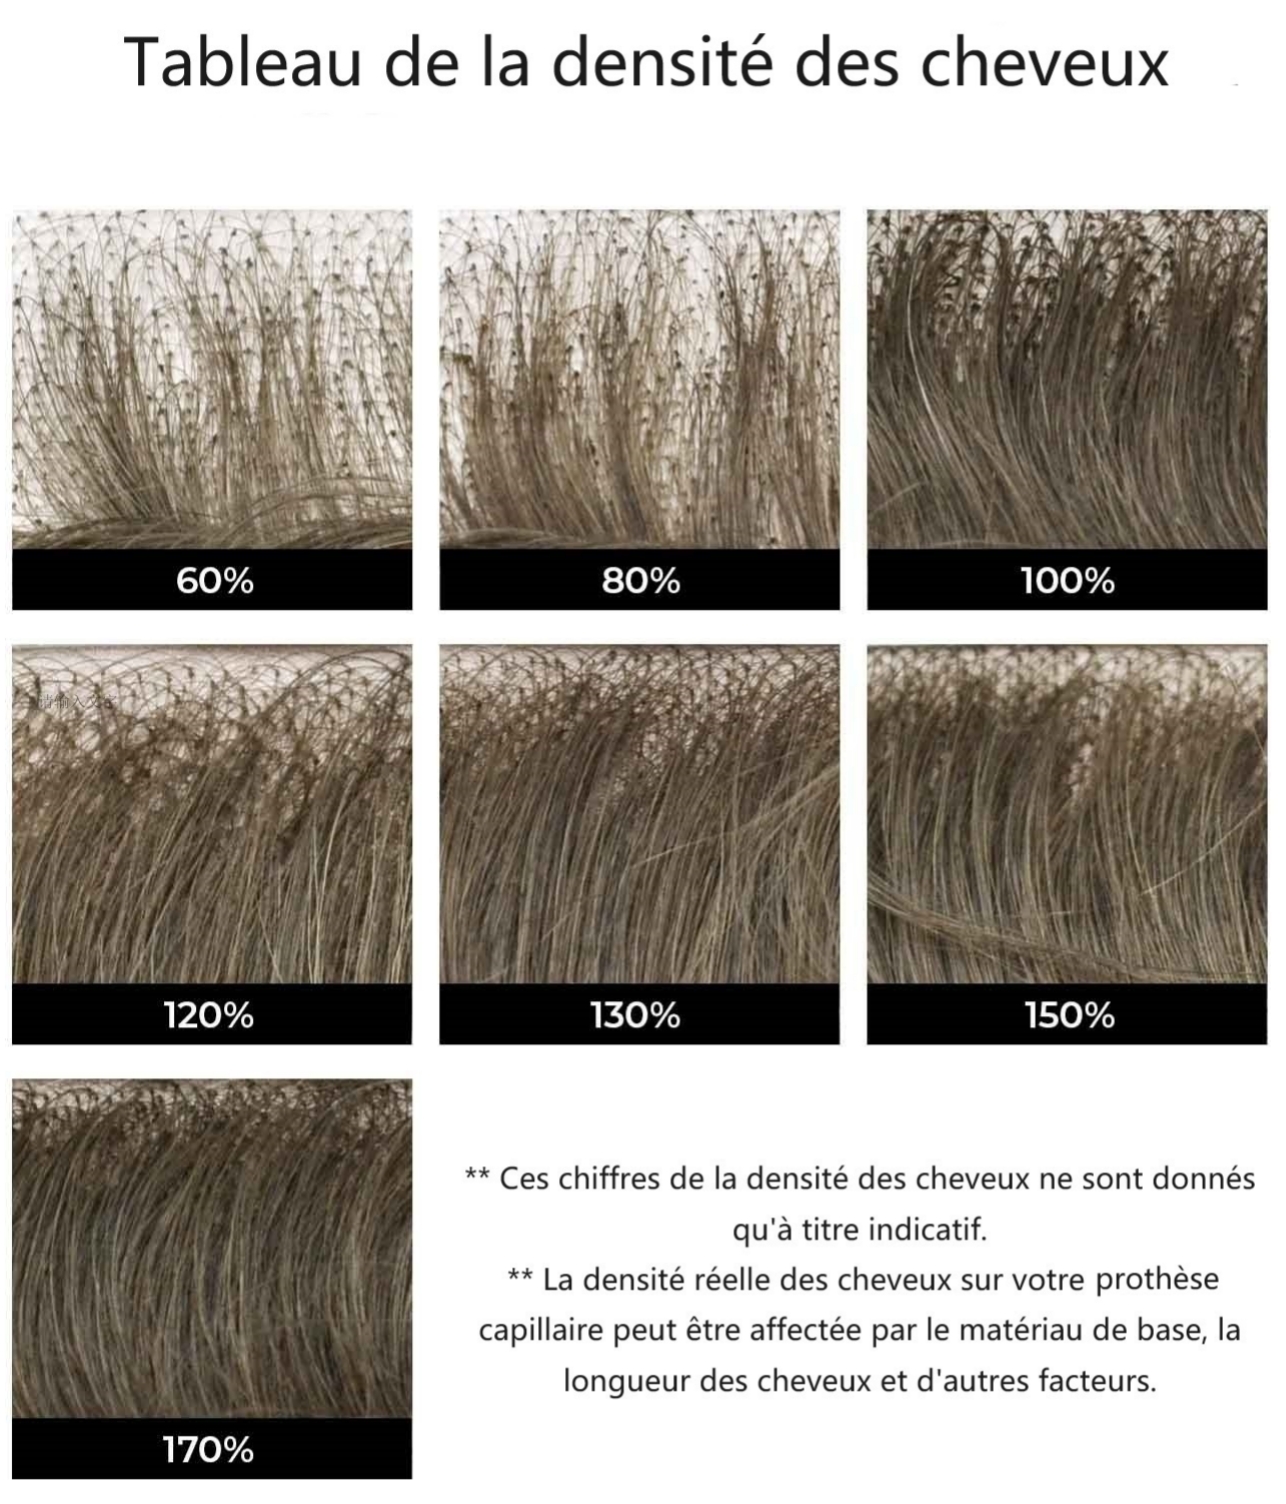 le tableau de densité de cheveux